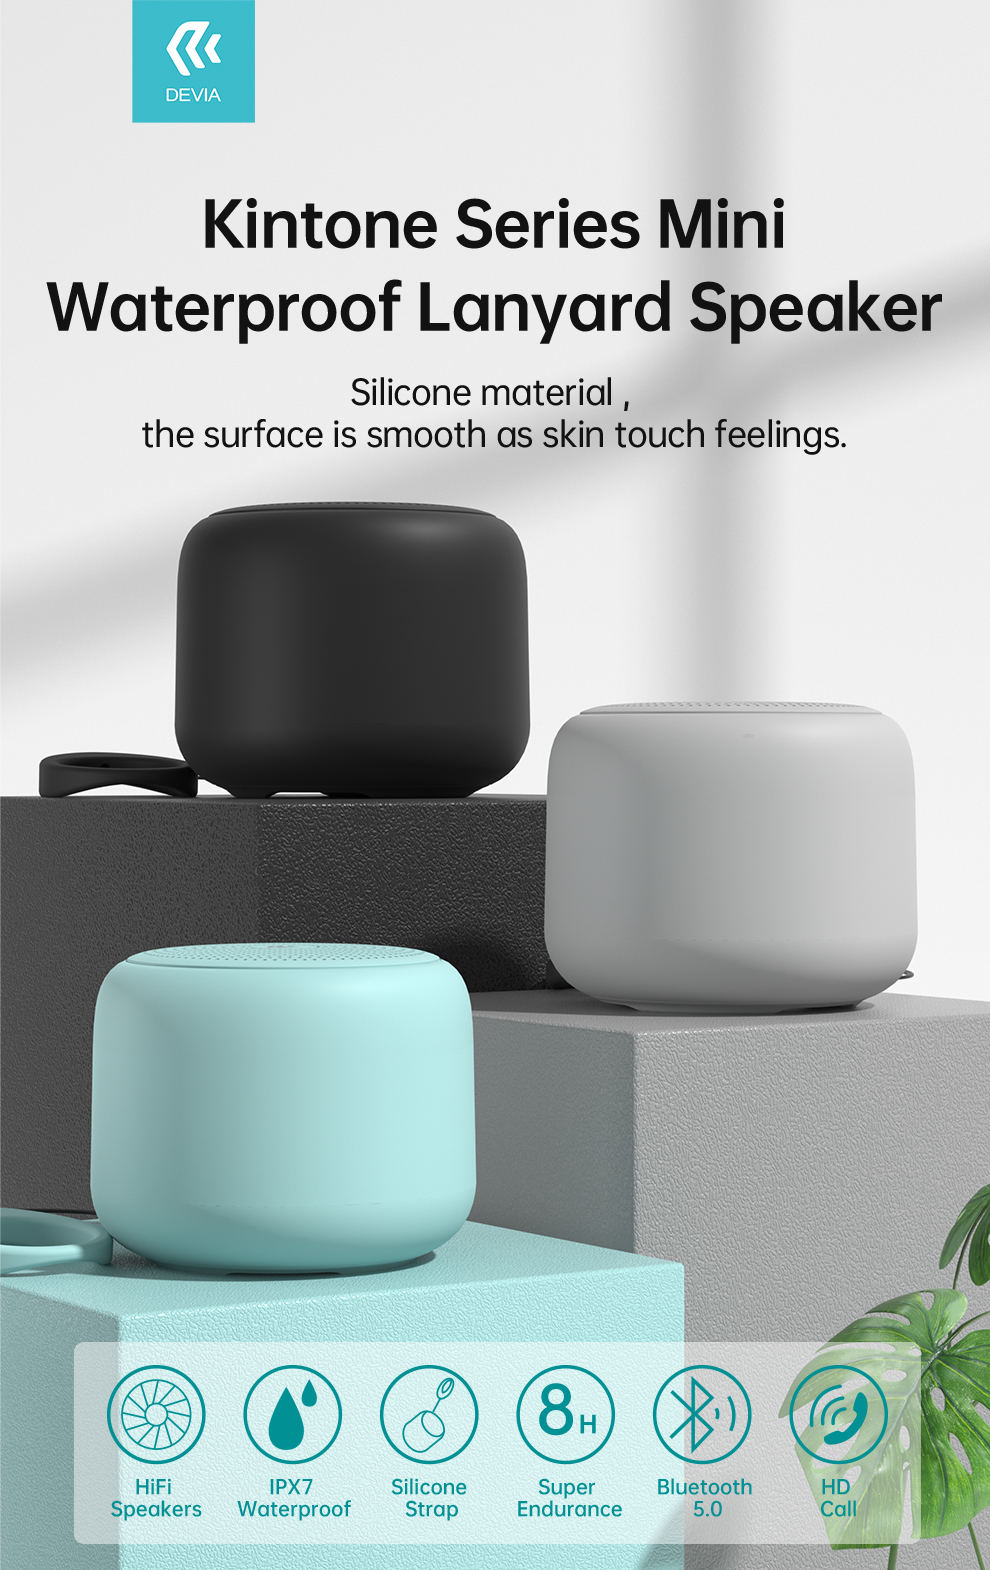 devia_kintone_series_mini_waterproof_lanyard_speaker